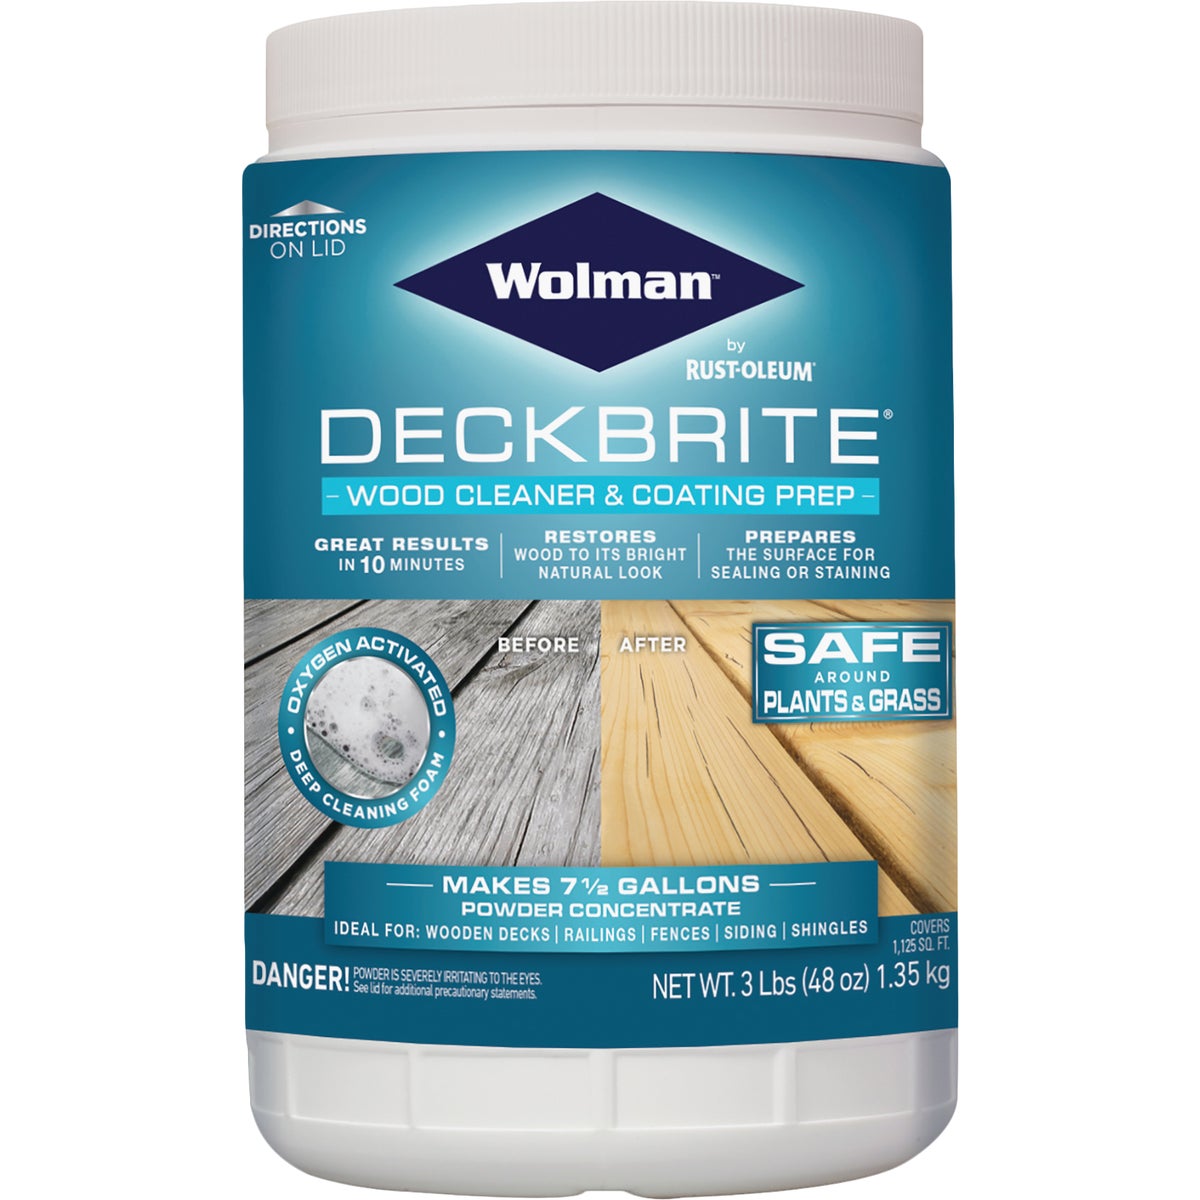 Wolman DeckBrite 3 Lb. Wood Cleaner & Coating Prep